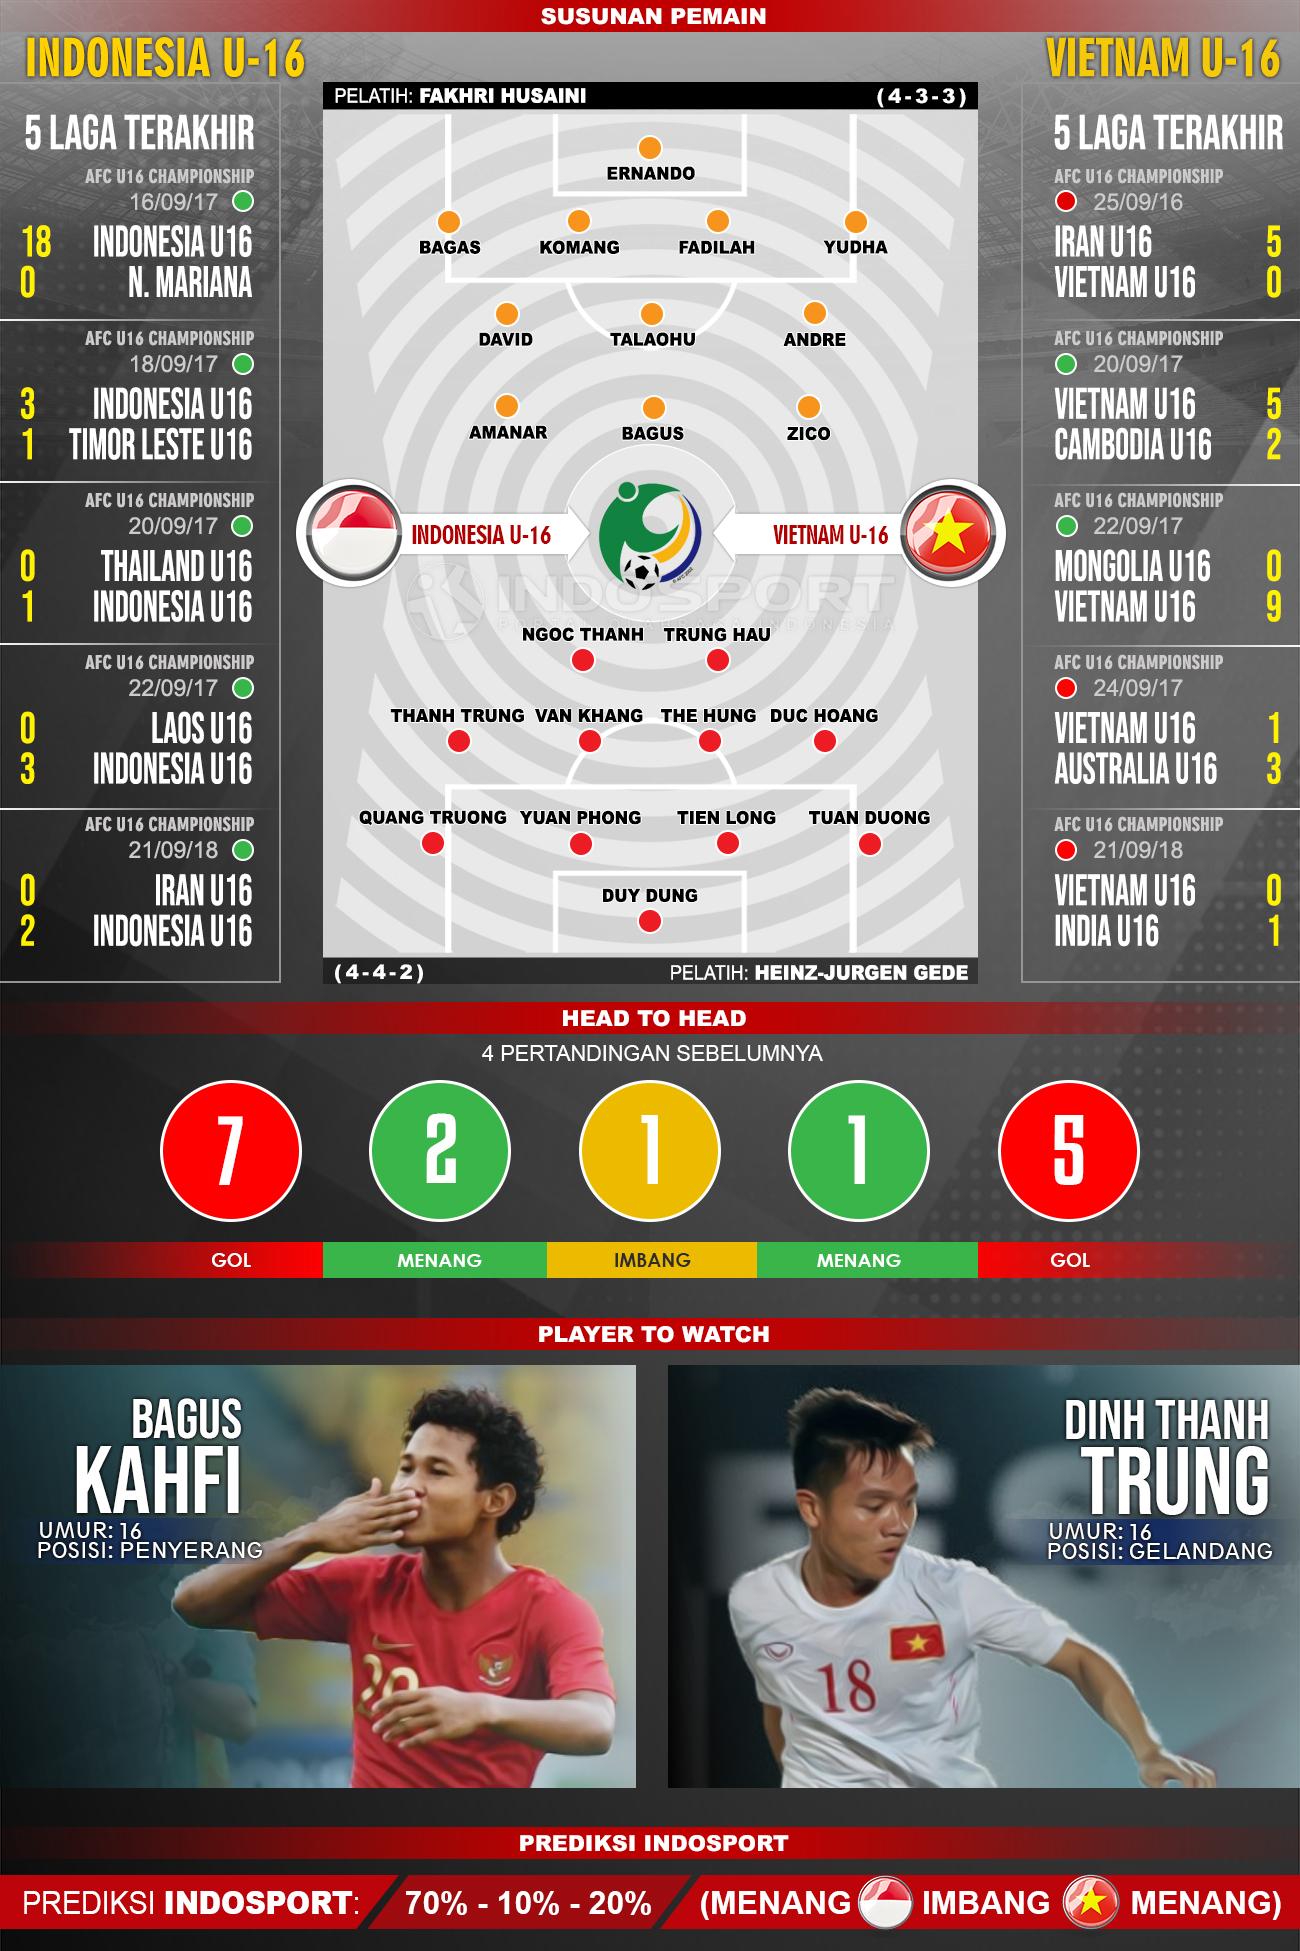 Indonesia U-16 vs Vietnam U-16 (Susunan Pemain - Lima Laga Terakhir - Player to Watch - Prediksi Indosport). Copyright: INDOSPORT